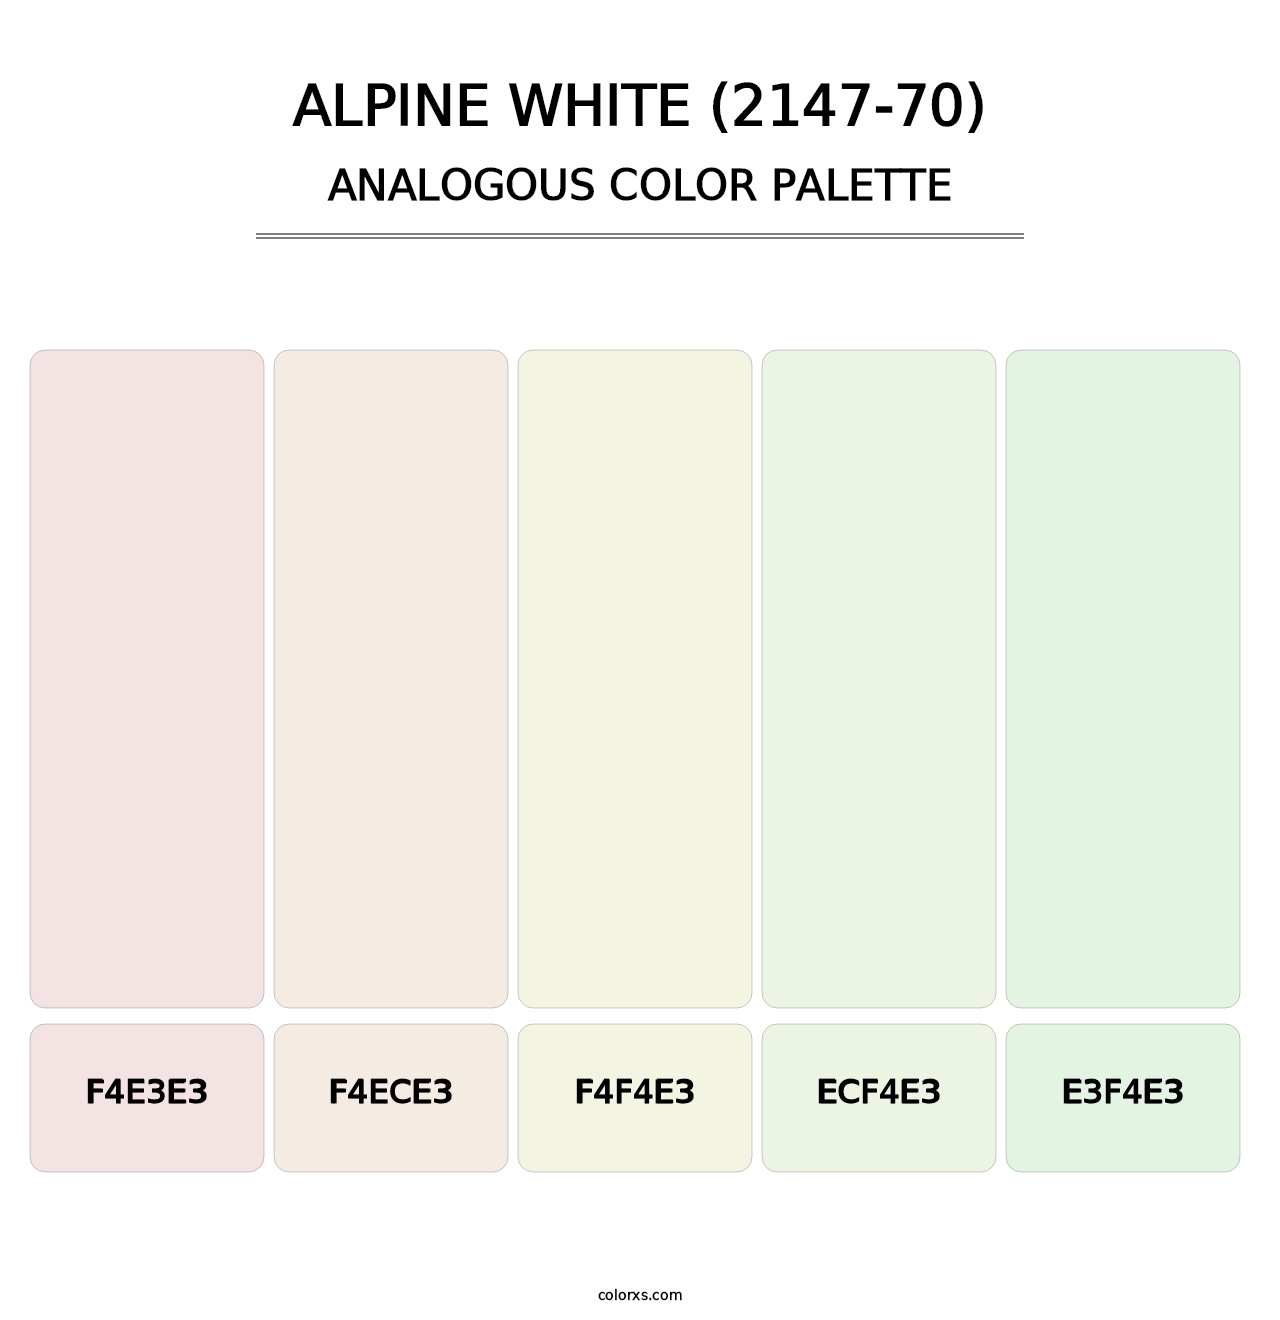 Alpine White (2147-70) - Analogous Color Palette